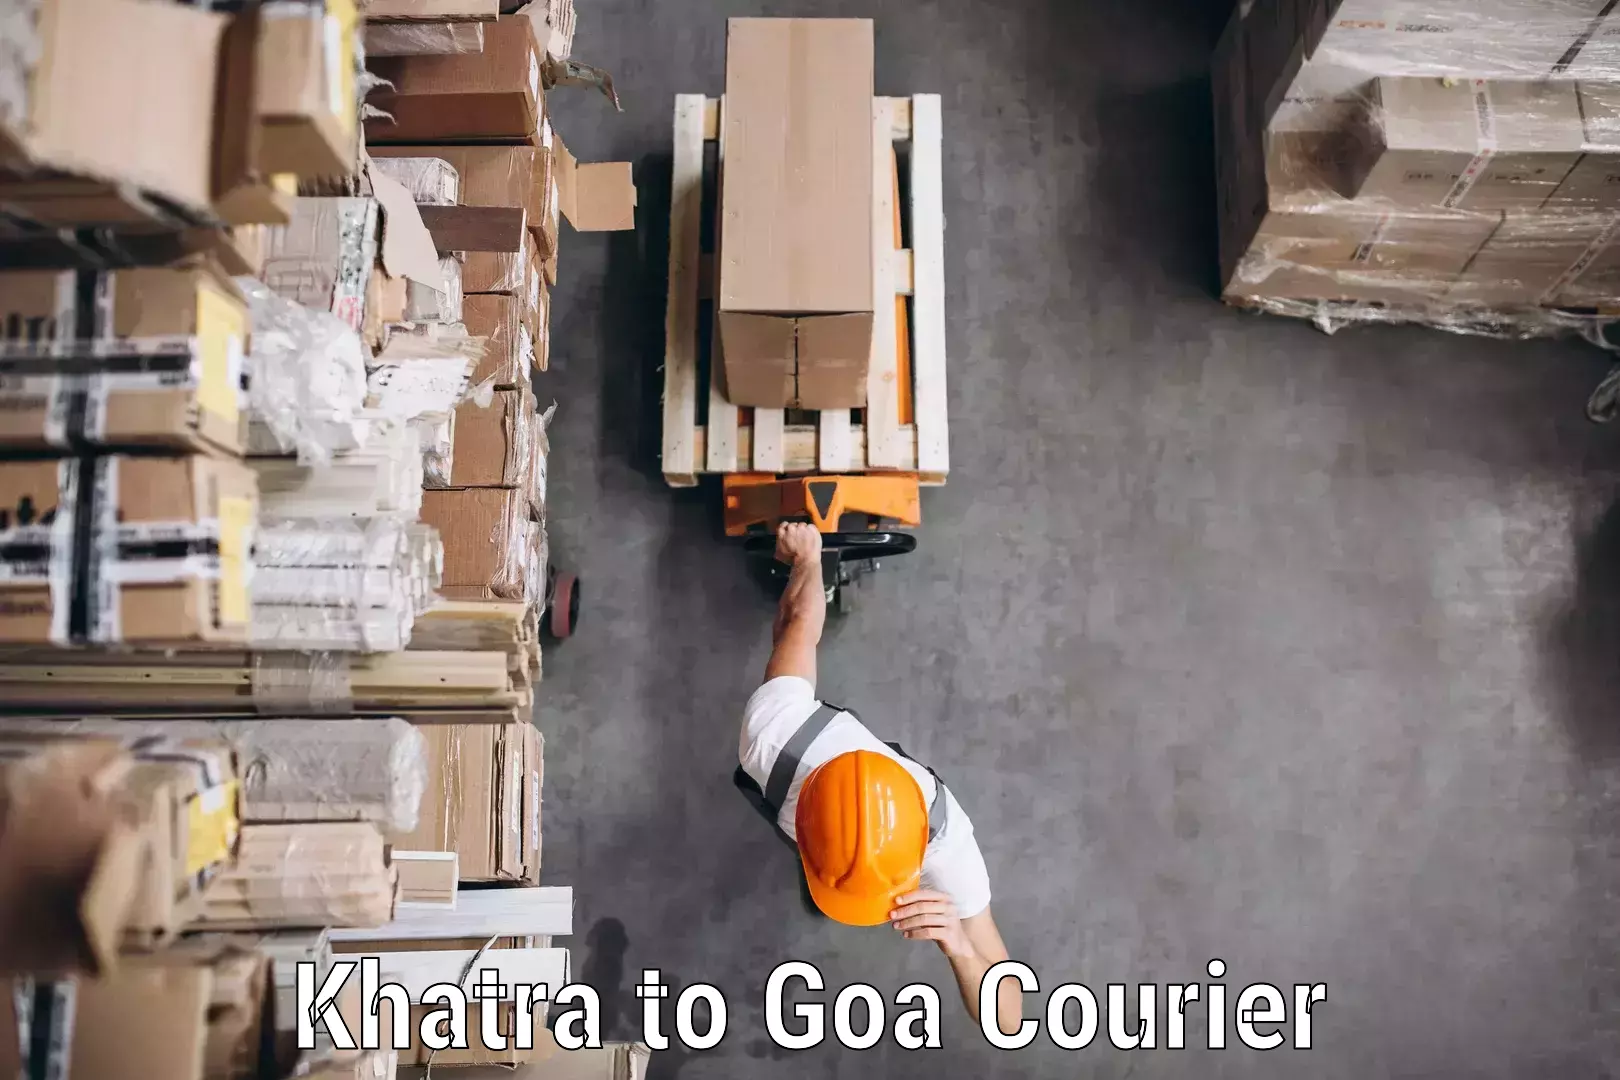 Reliable parcel services Khatra to NIT Goa